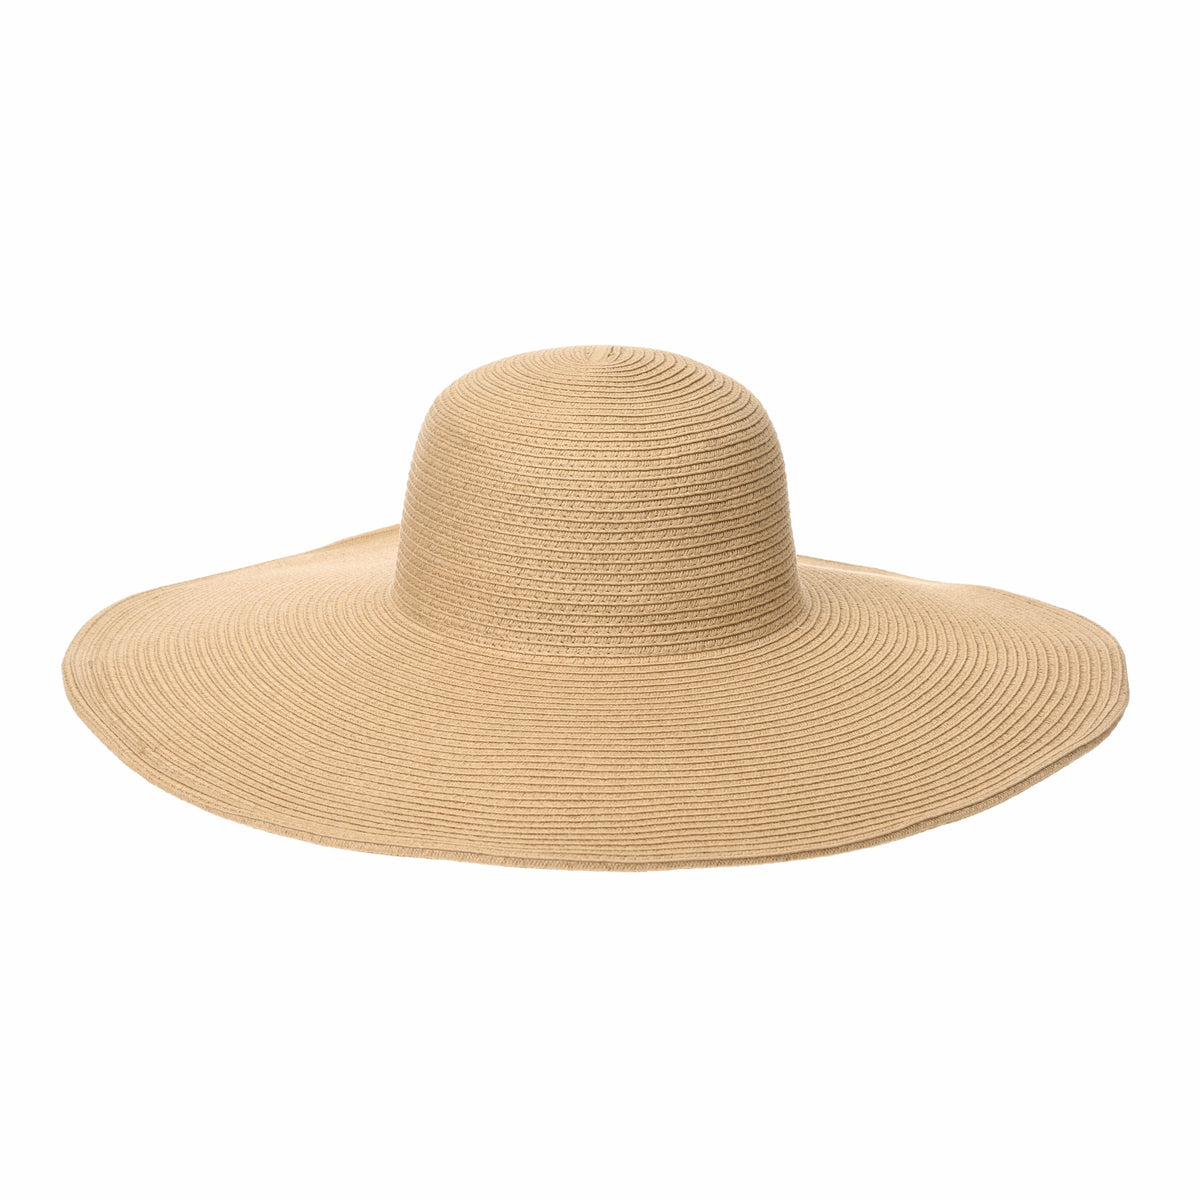 Krystle Stylish Straw Sun Hat Wide Large Brim Beach Floppy Hat-(White)